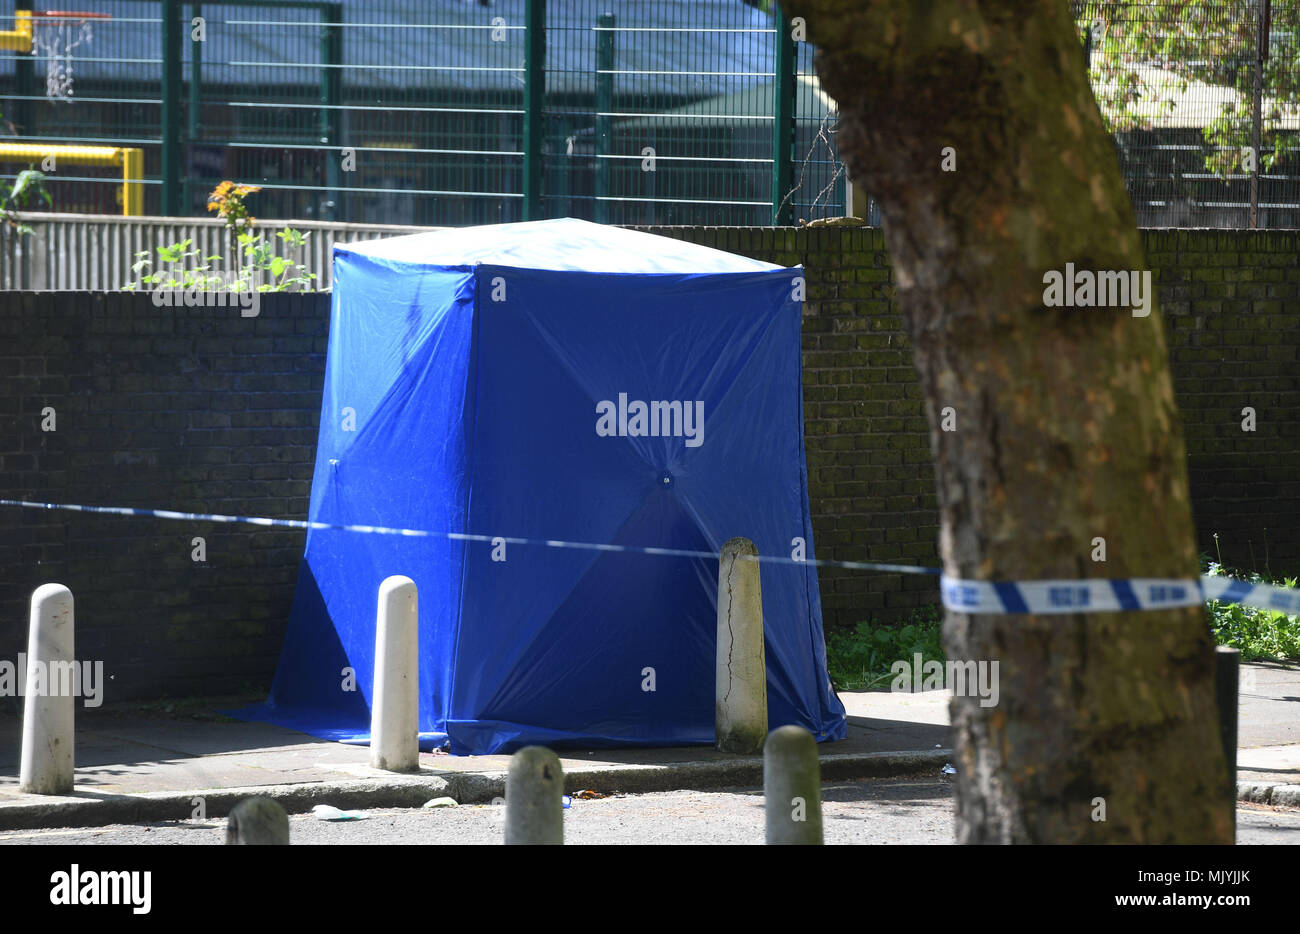 Une expertise médico-légale par la tente bleu cordon de police dans la région de Warham Street, Southwark, Londres du sud, où un garçon de 17 ans a été abattu samedi soir, après qu'ont été appelés à coups de rapports sur la route à proximité de cuisiniers. Banque D'Images